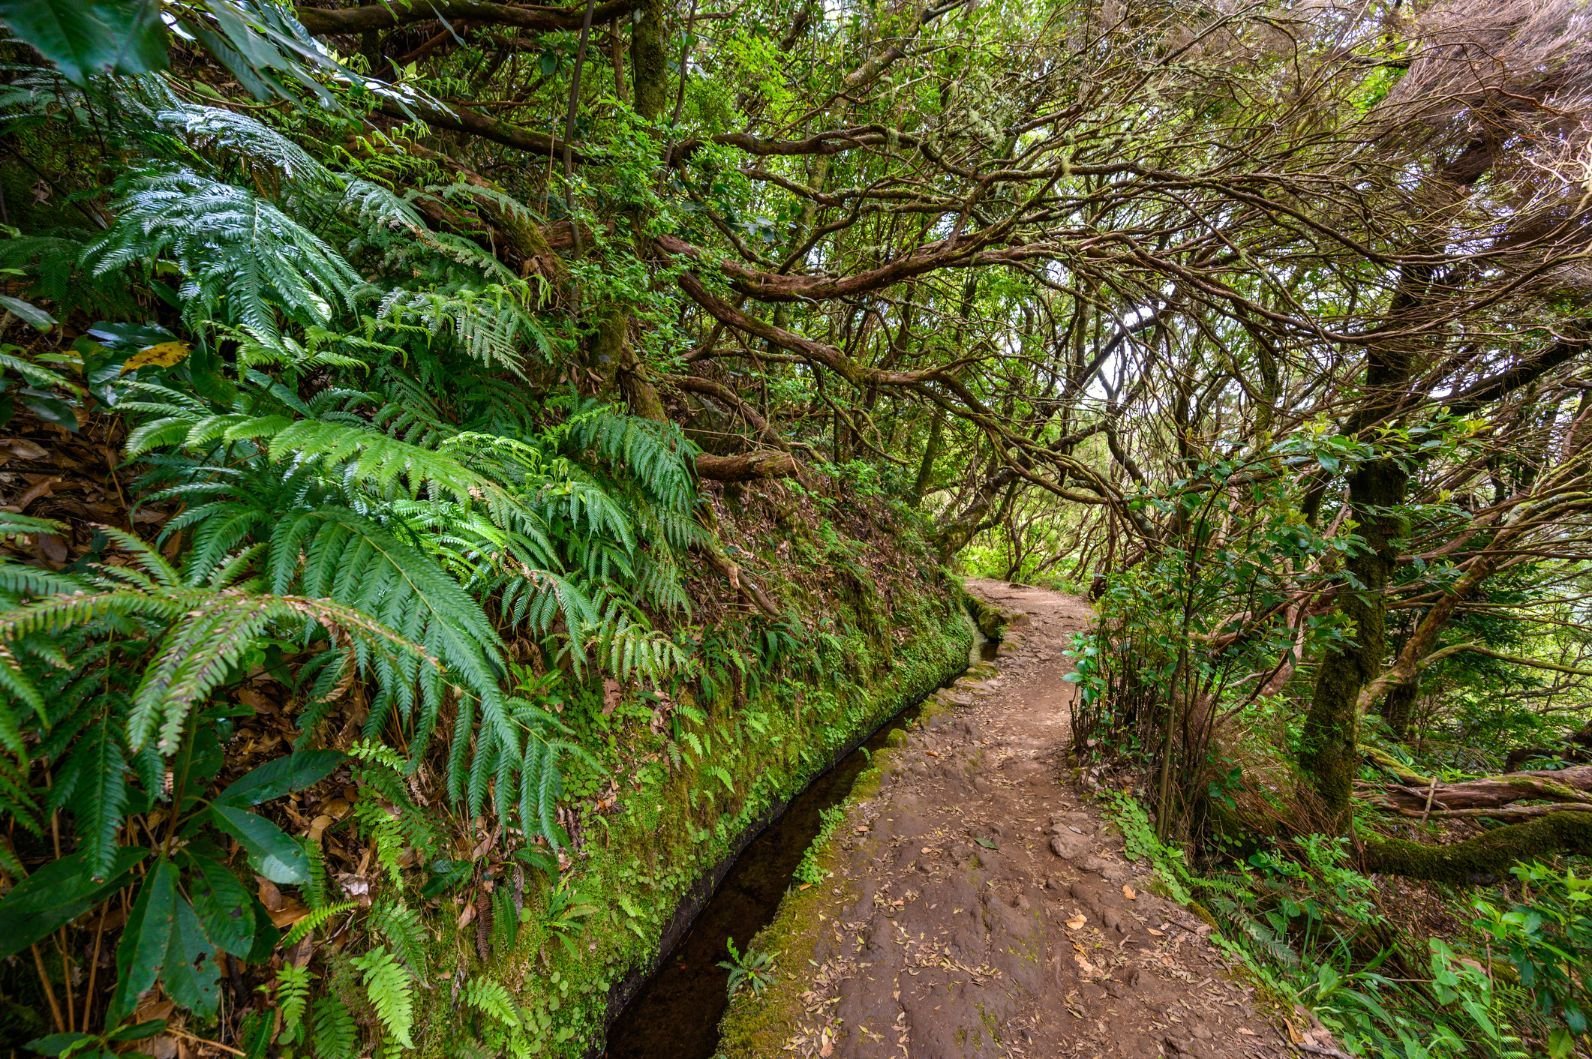 Levada do Caldeirão hiking trail in Madeira, which follows a water spring